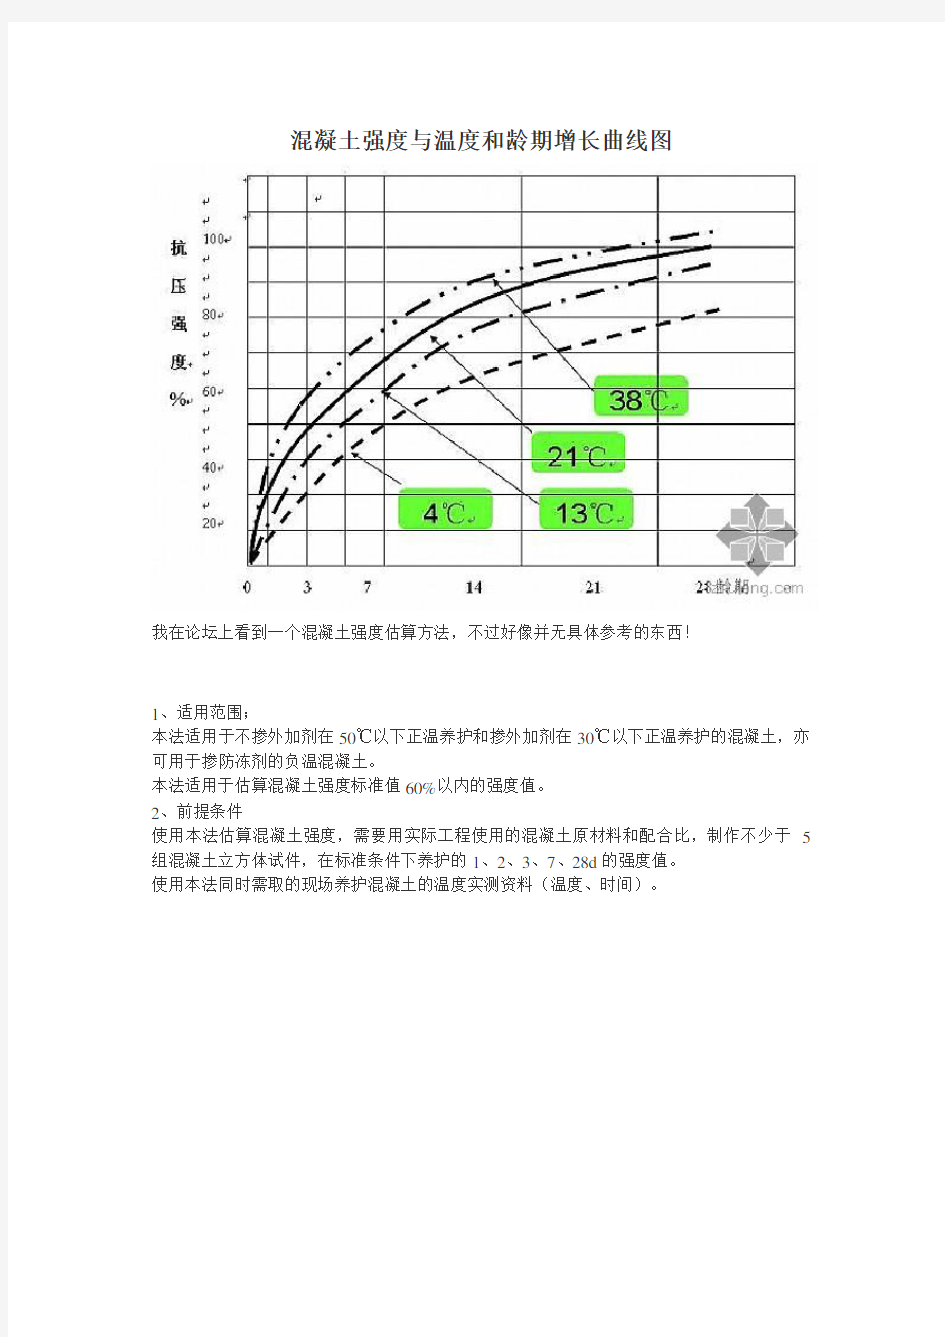 混凝土强度与温度和龄期增长曲线图